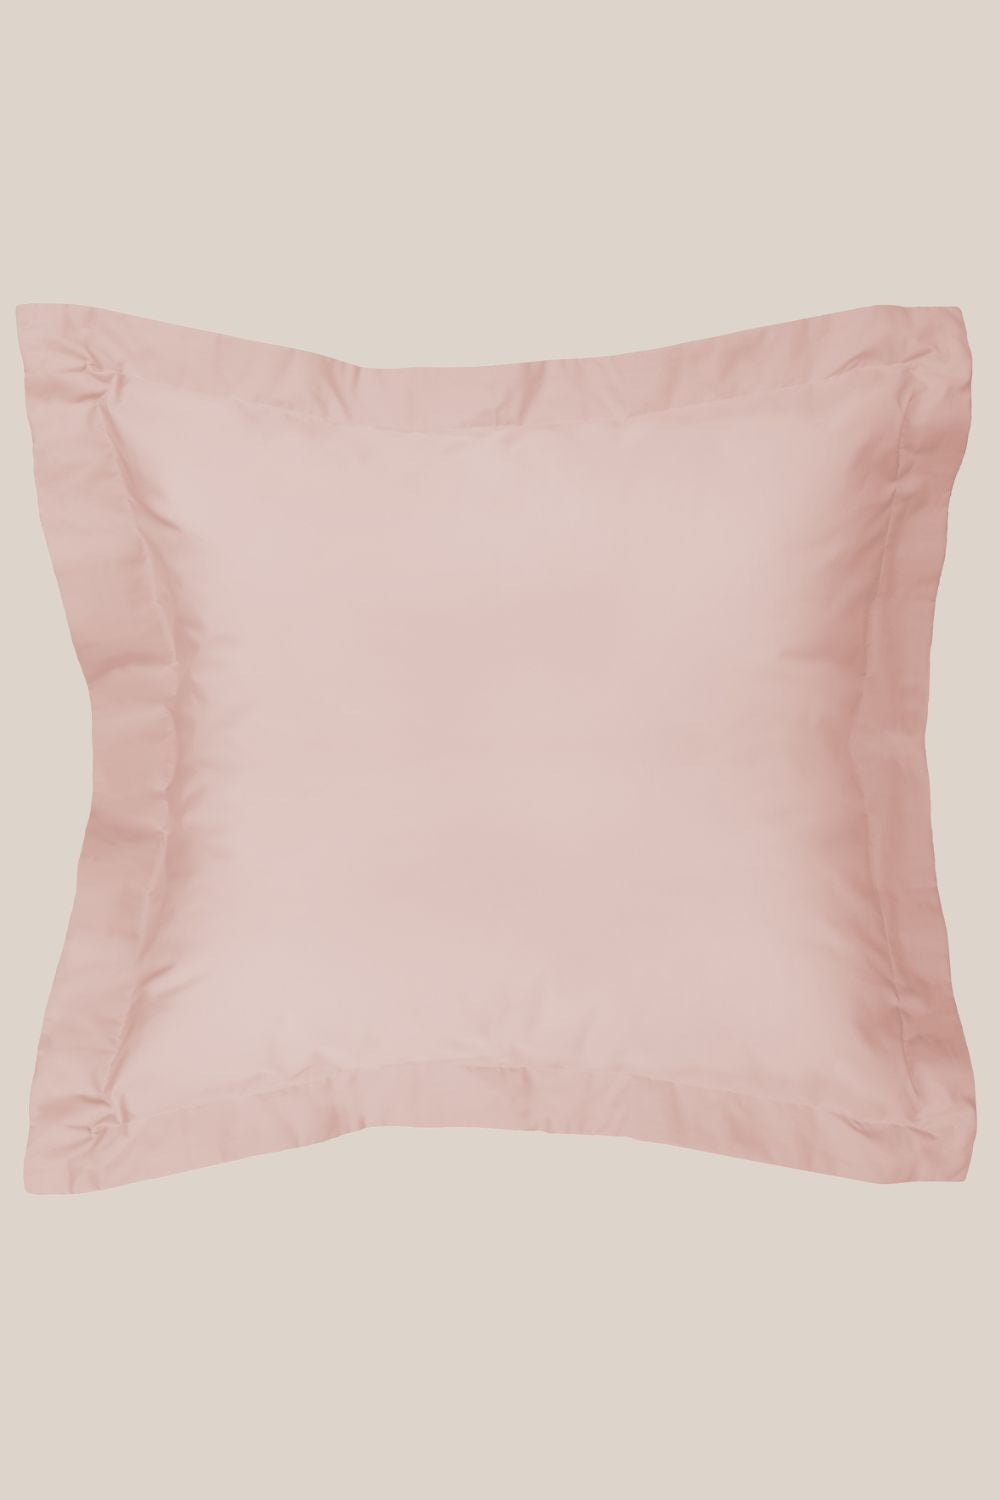 Algodon 300TC Cotton Euro Pillowcase